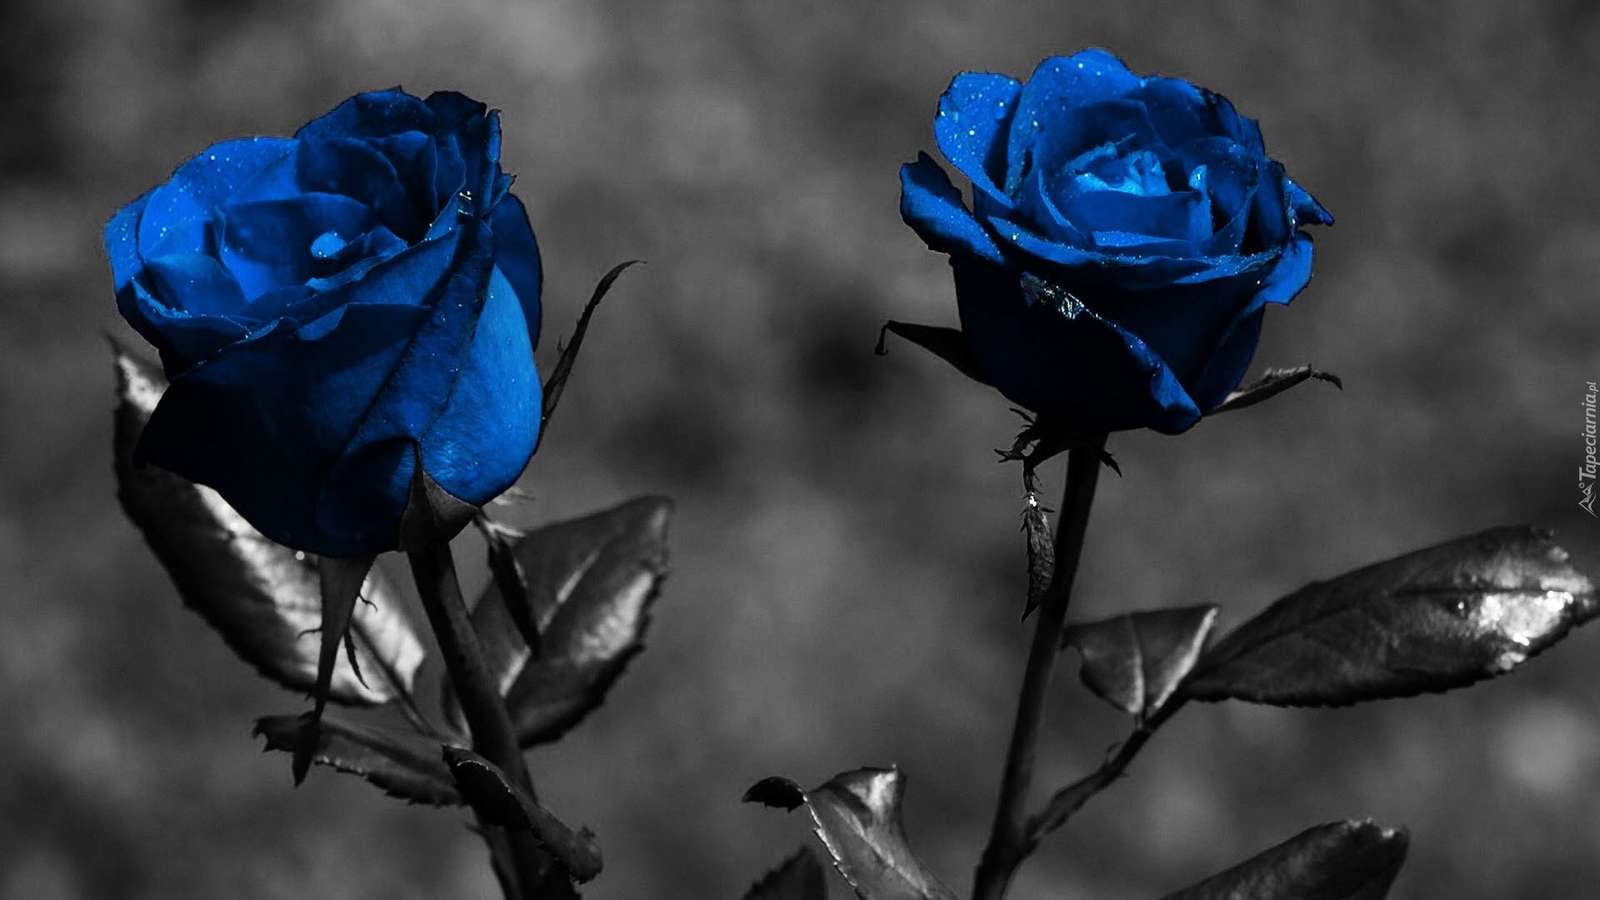 Trandafiri albastri puzzle online